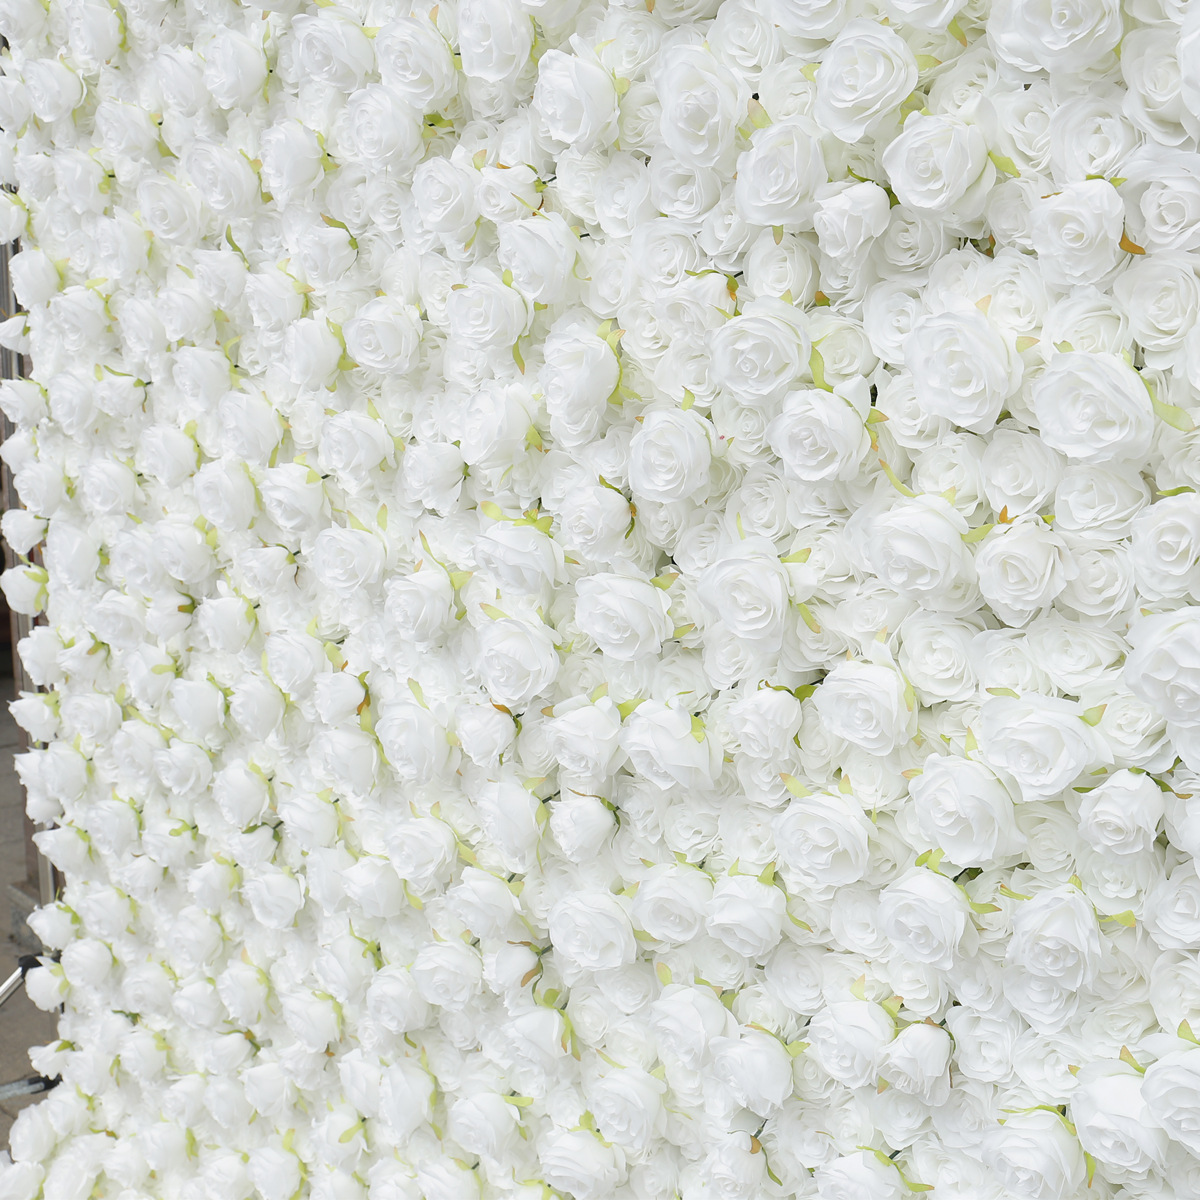 Kain putih murni ing ngisor tembok mawar tembok latar mburi dhuwur-Kapadhetan 5D dekorasi wedding dekorasi wedding